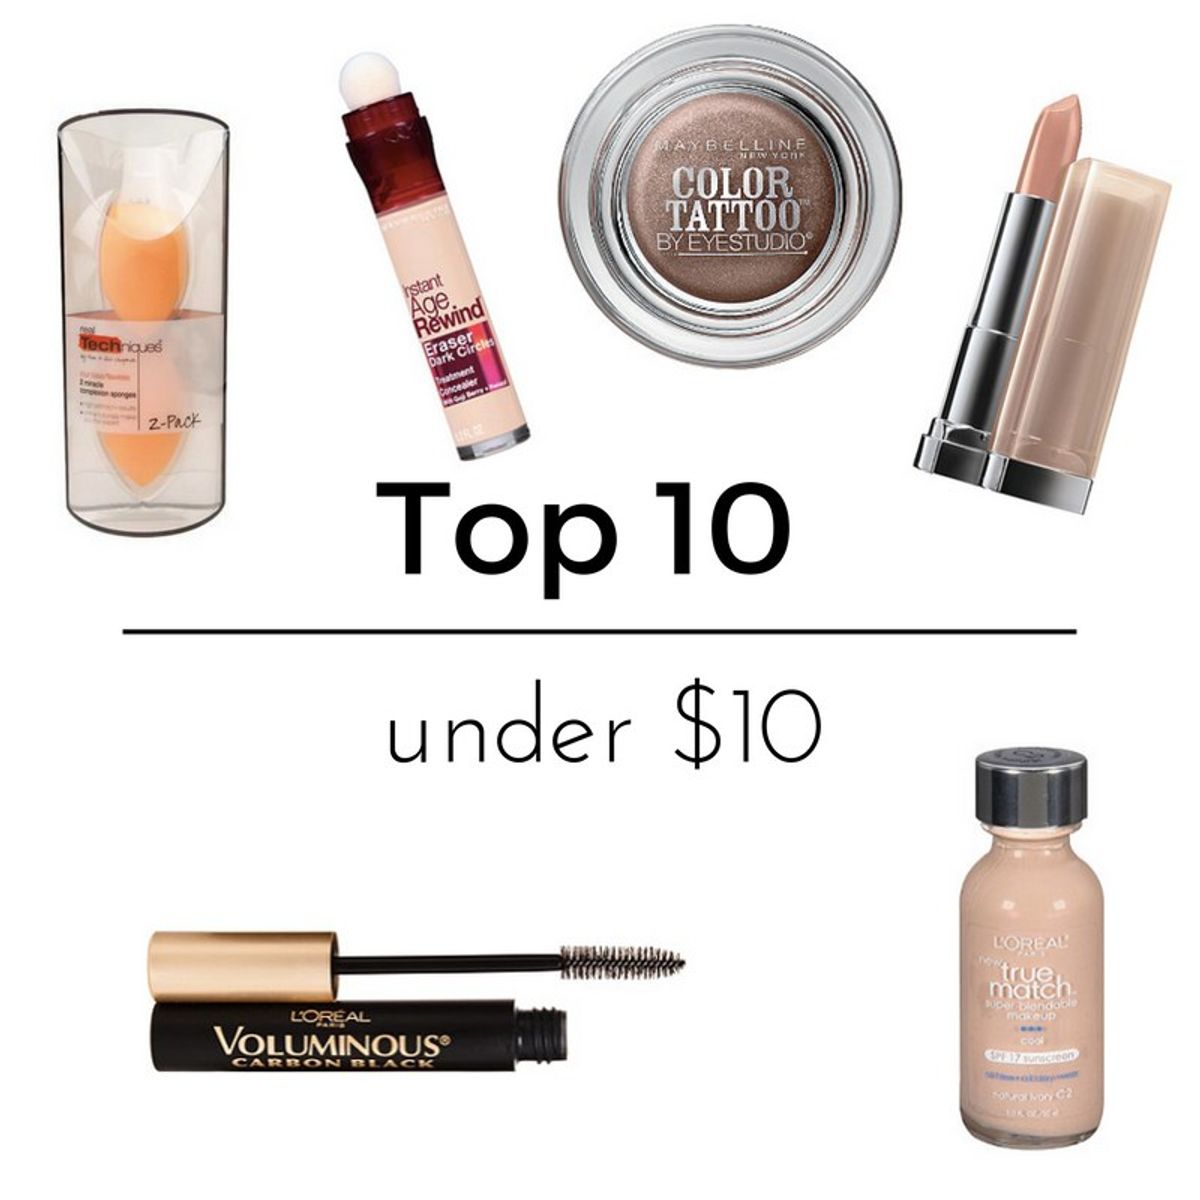 Top Ten Makeup Products Under $10